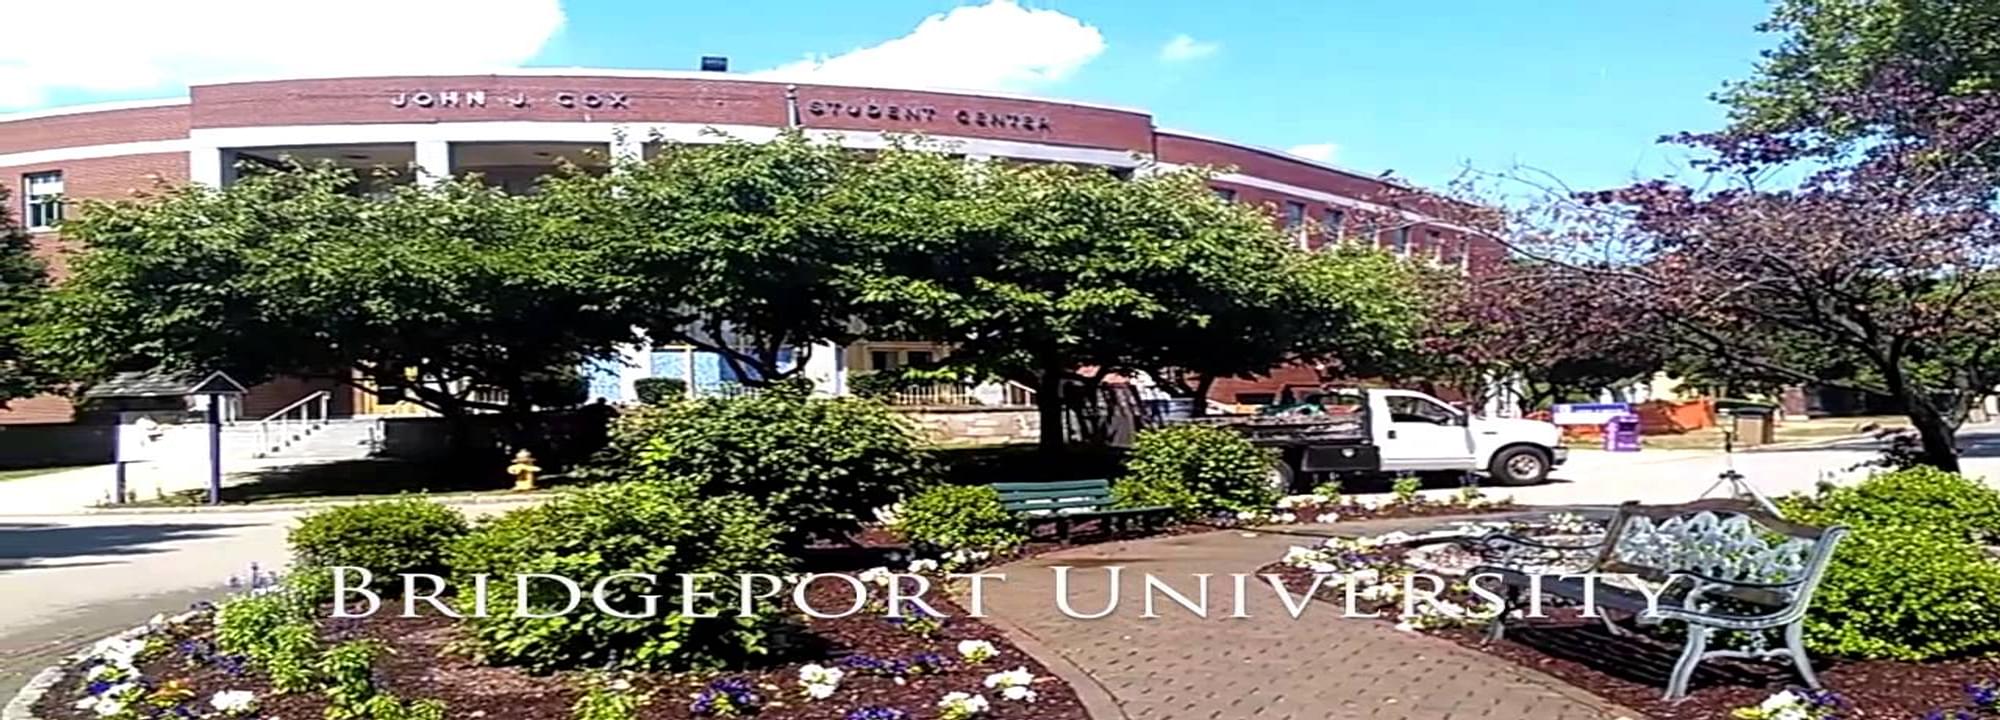 University of Bridgeport Ranking - CollegeLearners.com